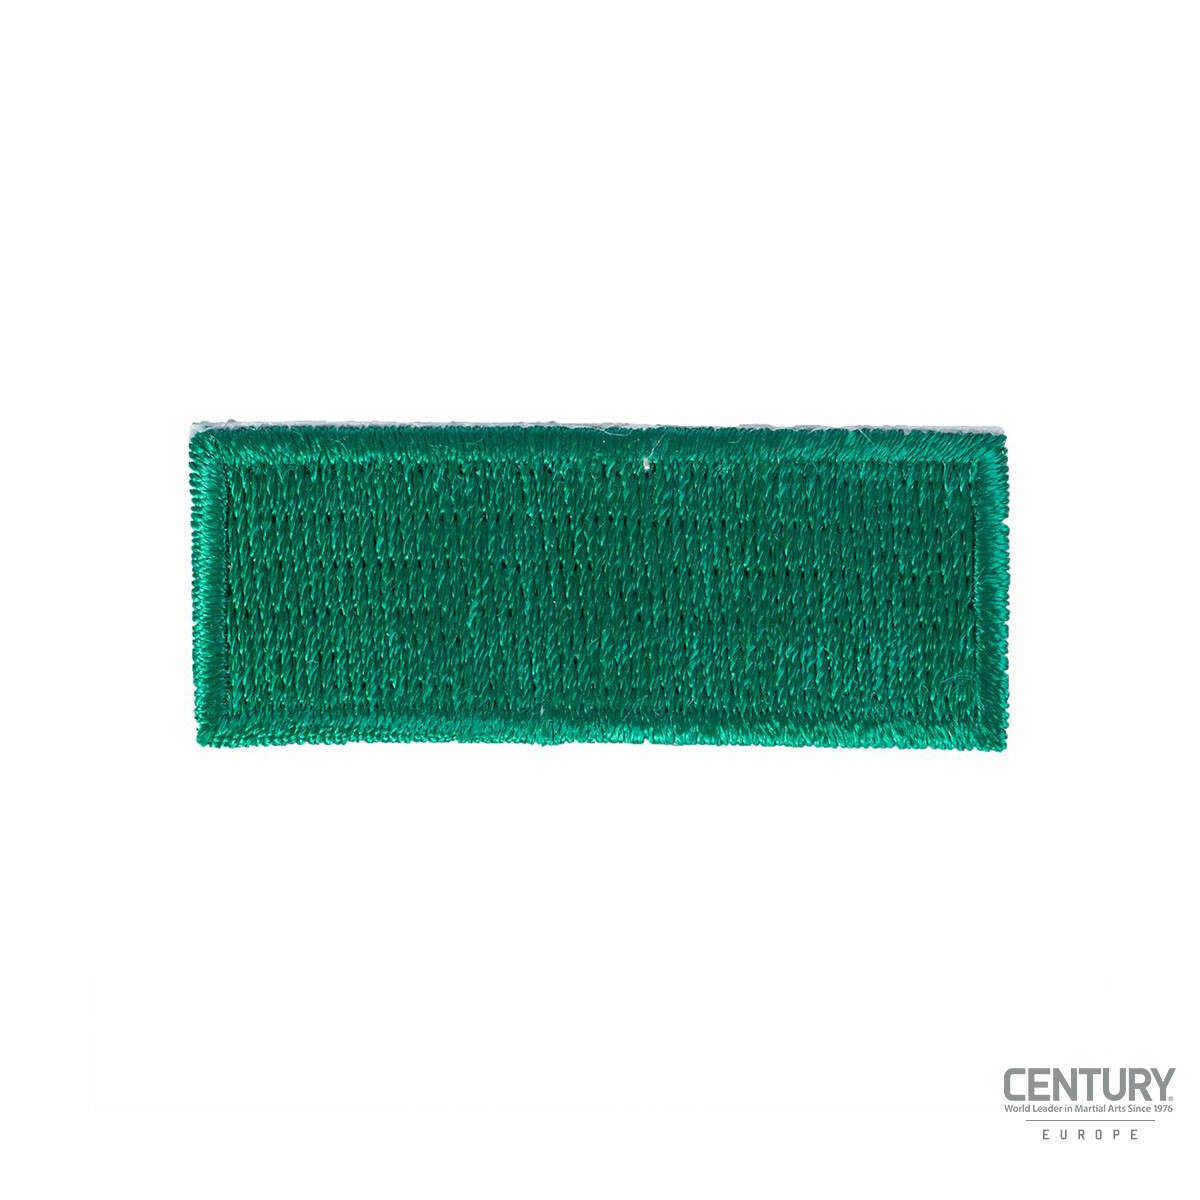 Rangabzeichen für Gürtel - 10er Pack Grün